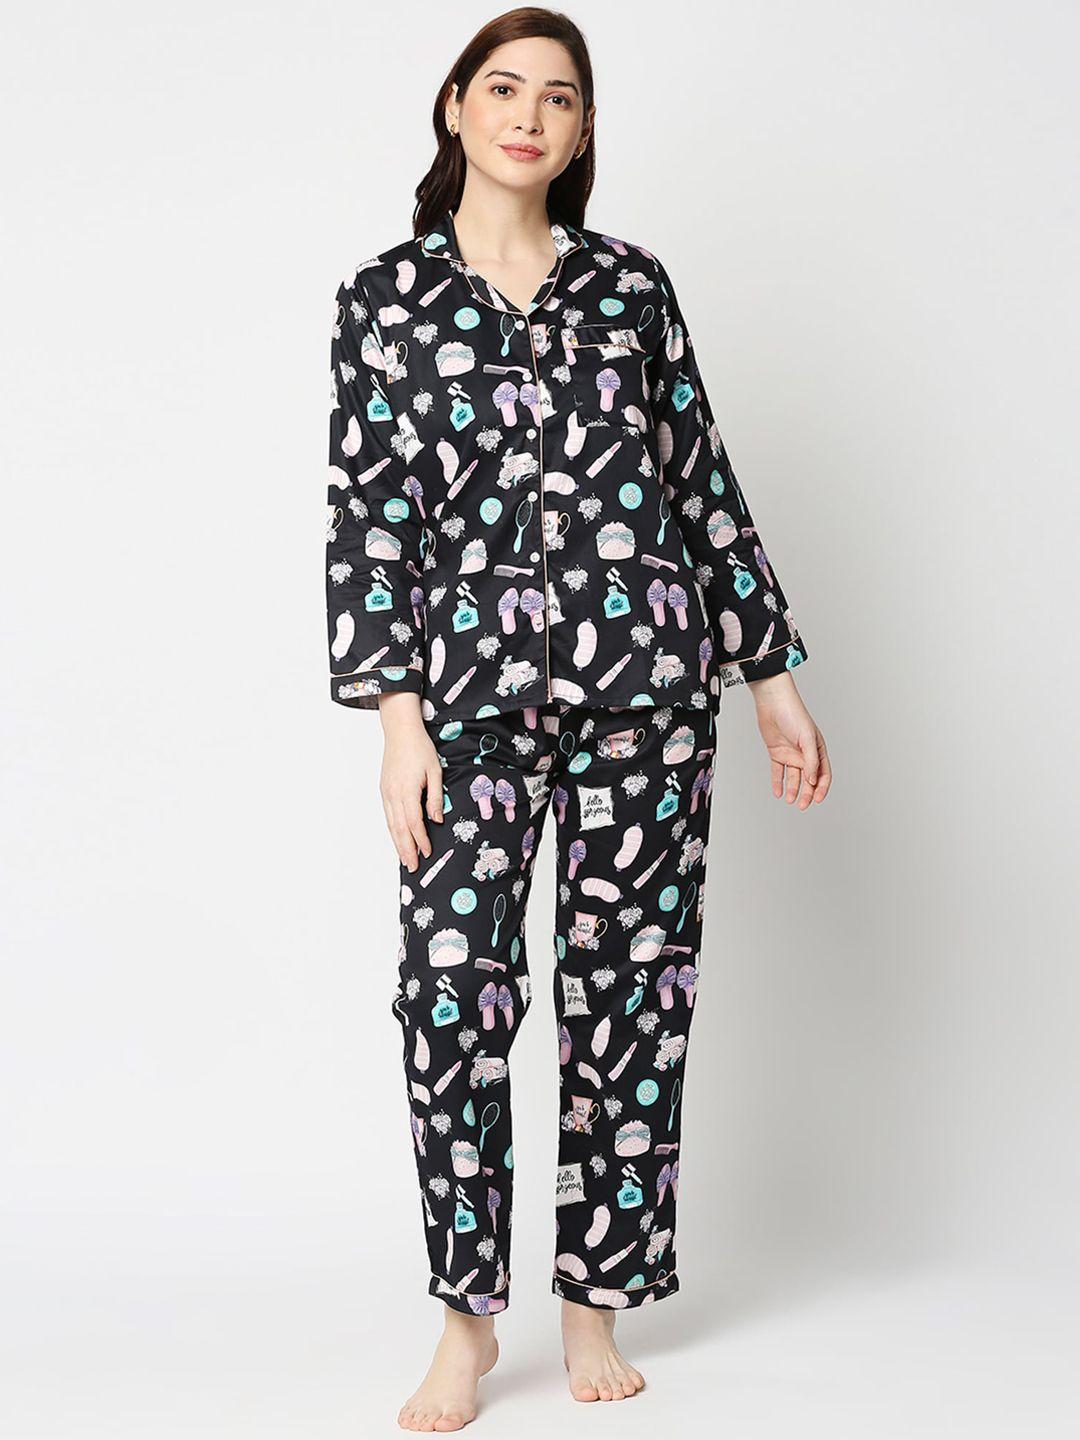 pyjama party women black & white printed night suit